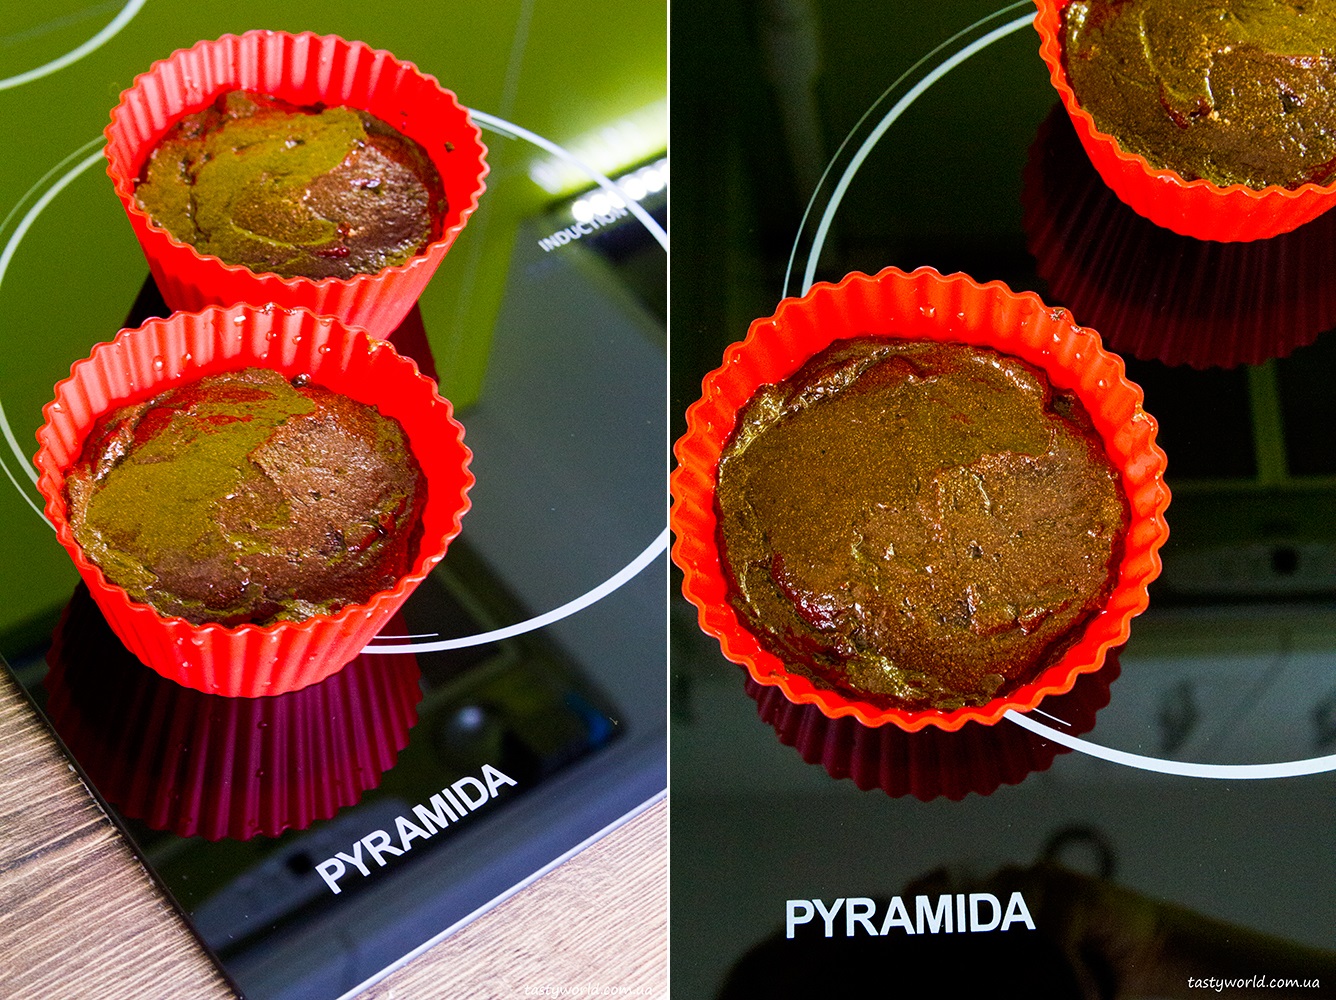  Рецепт шоколадного муса з варильною поверхнею Pyramida